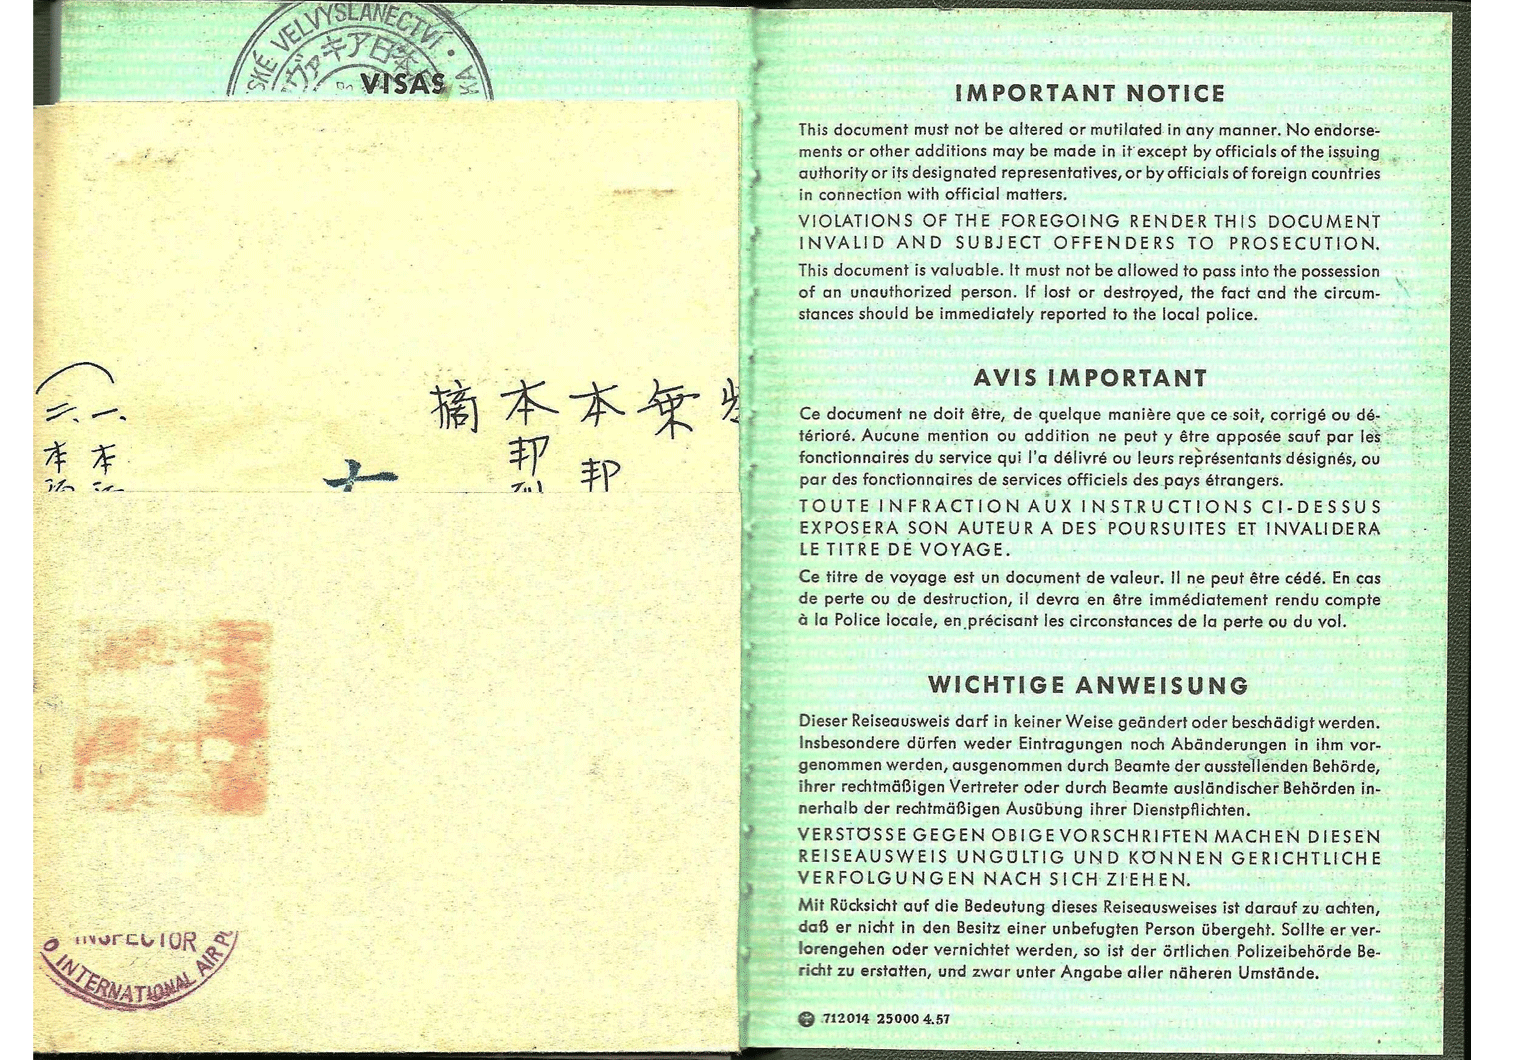 Allied German passport